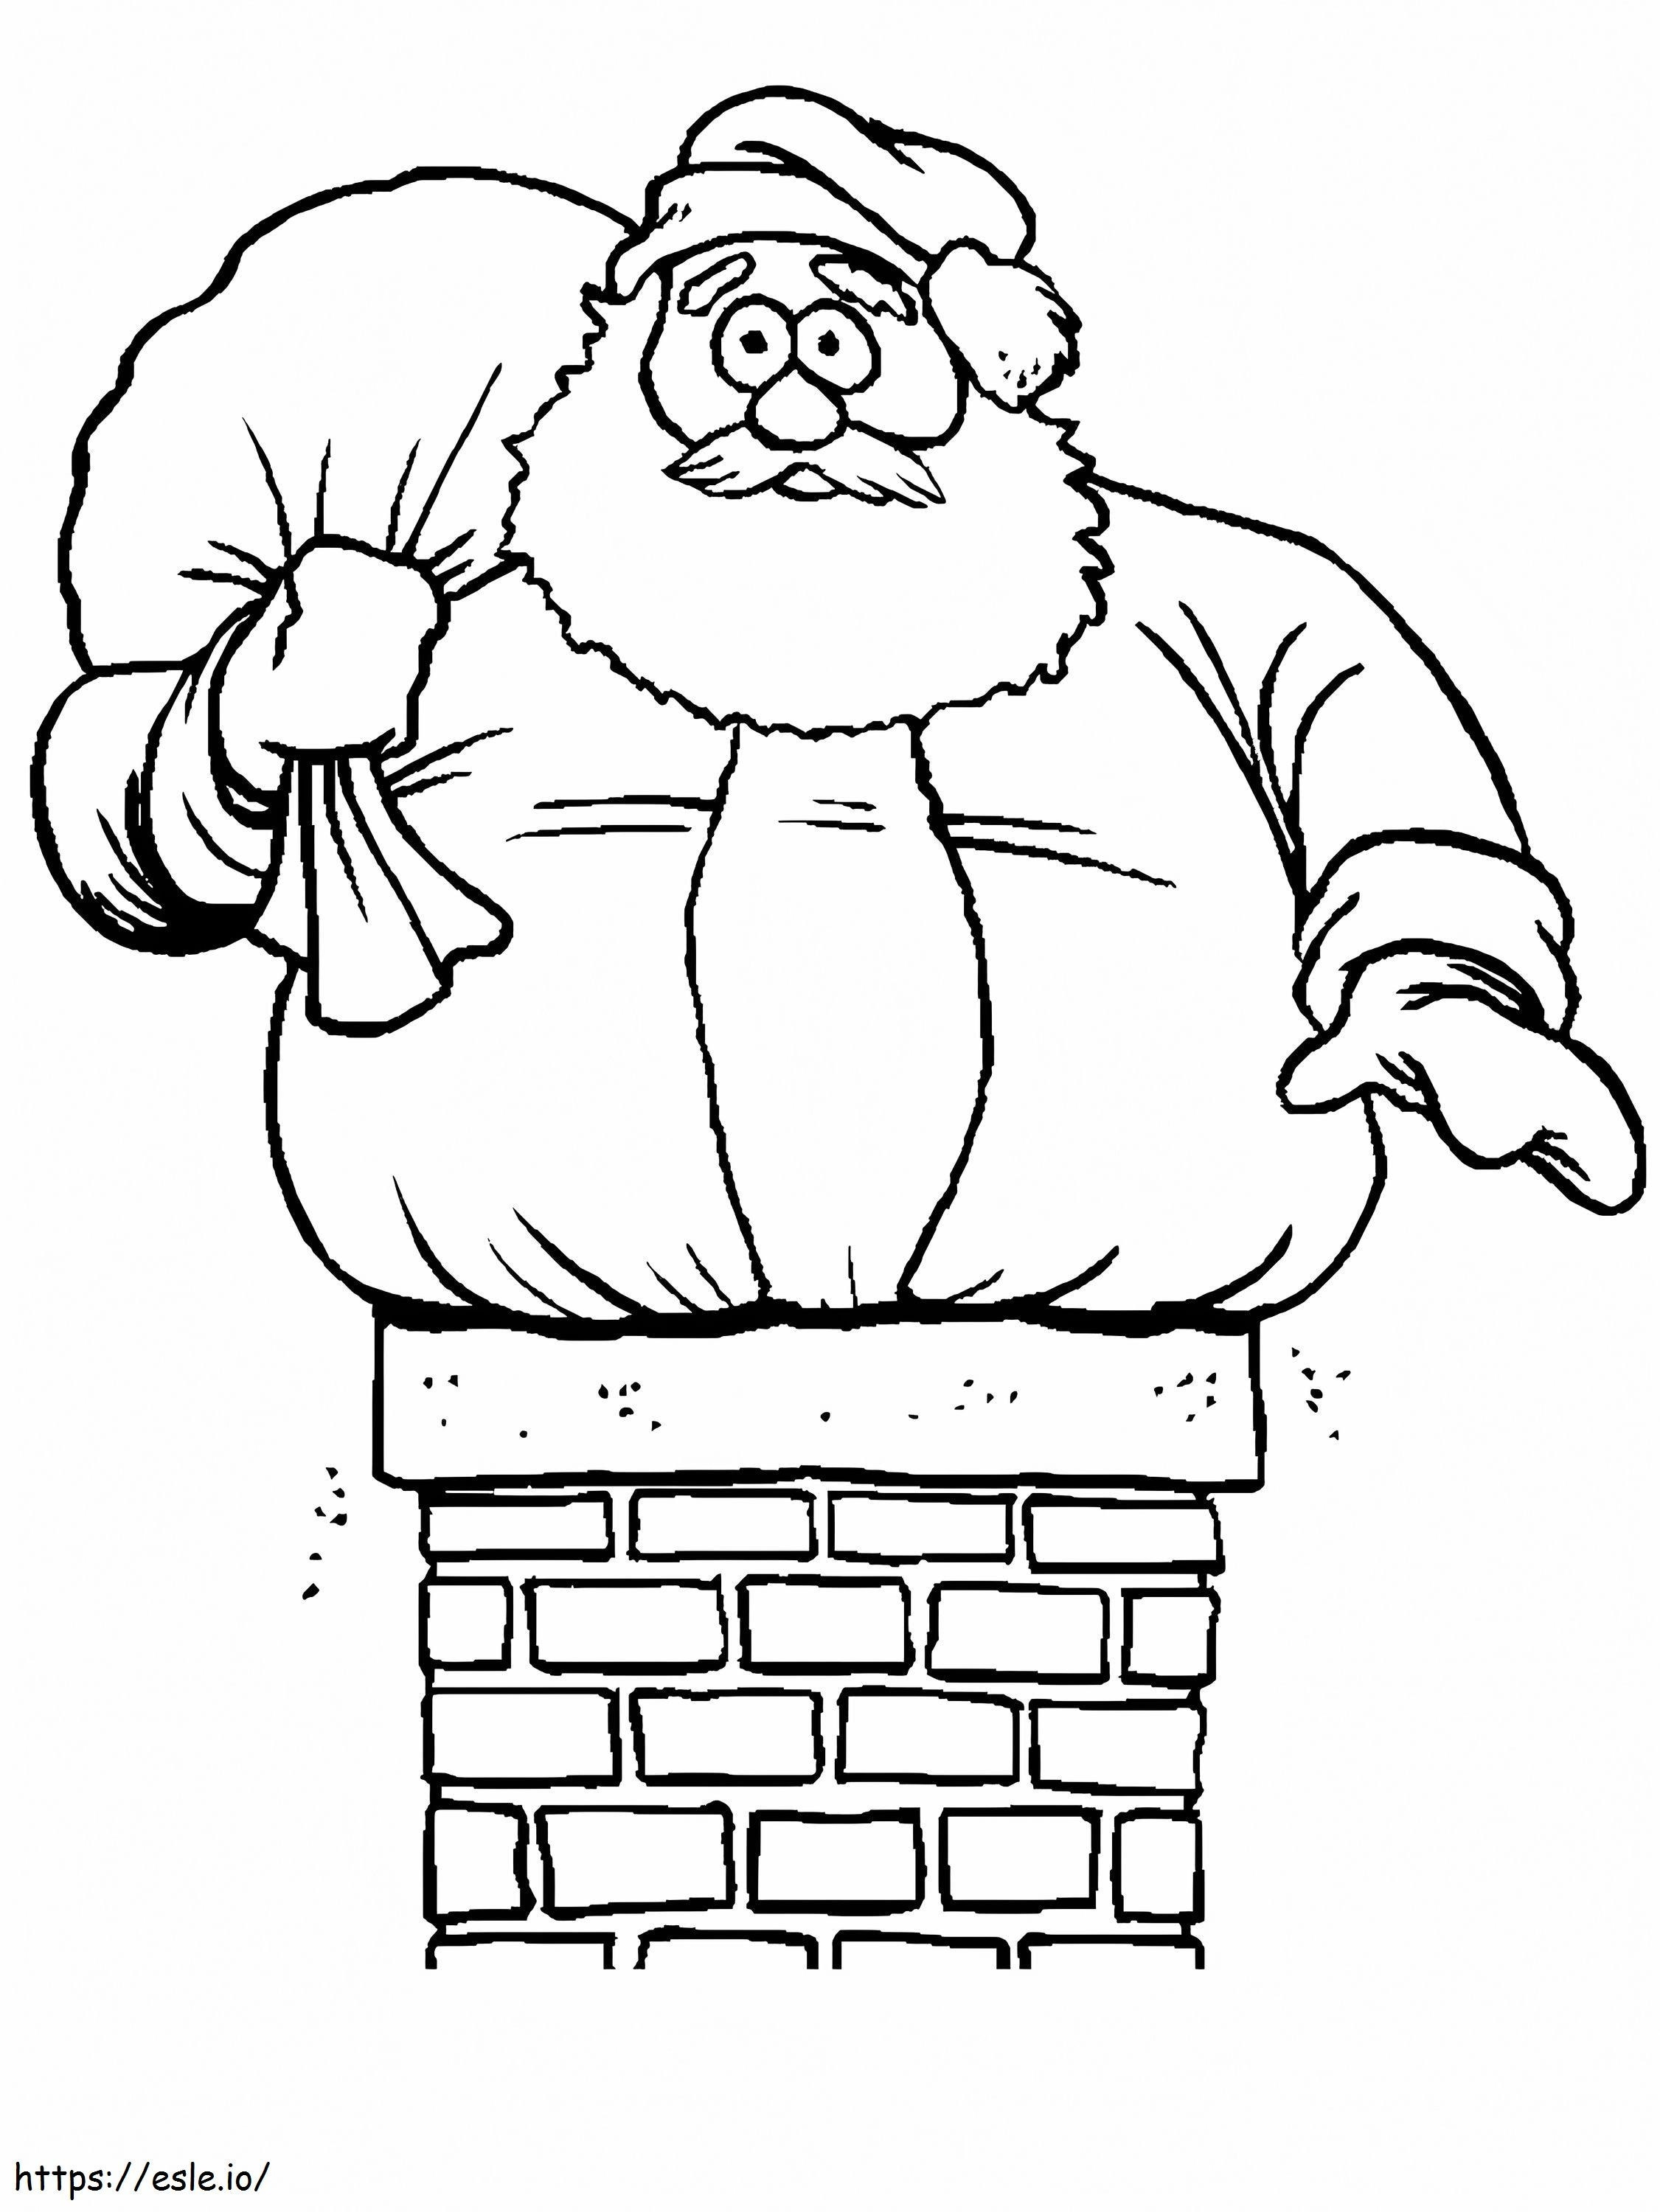 Coloriage 1545182608 Père Noël en ligne avec coincé dans la cheminée Noël 2 Pinterest à imprimer dessin